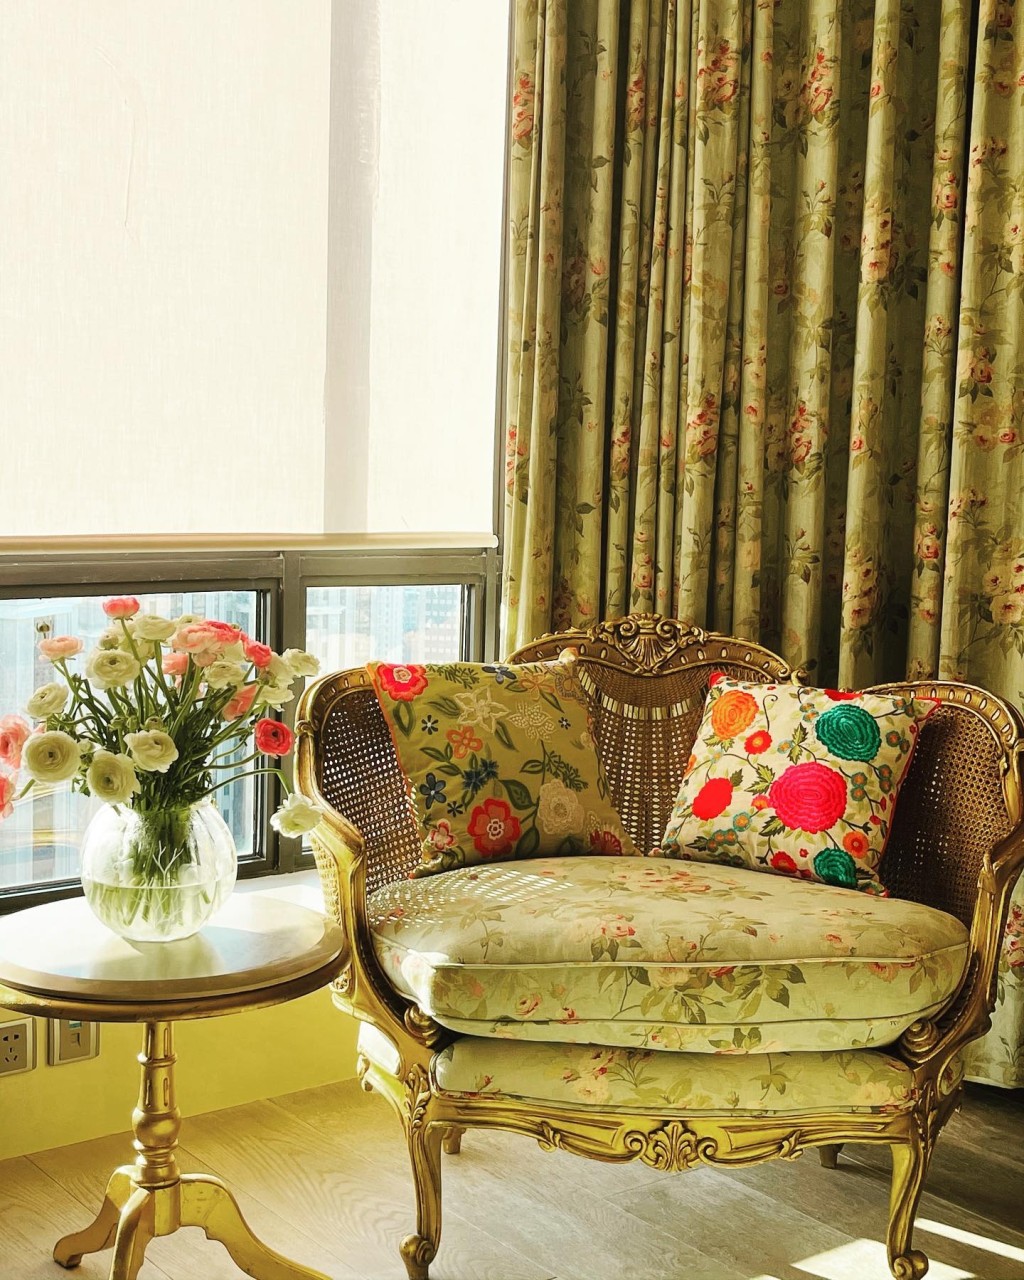 屋內佈置與香港大宅一樣走奢華復古風格。